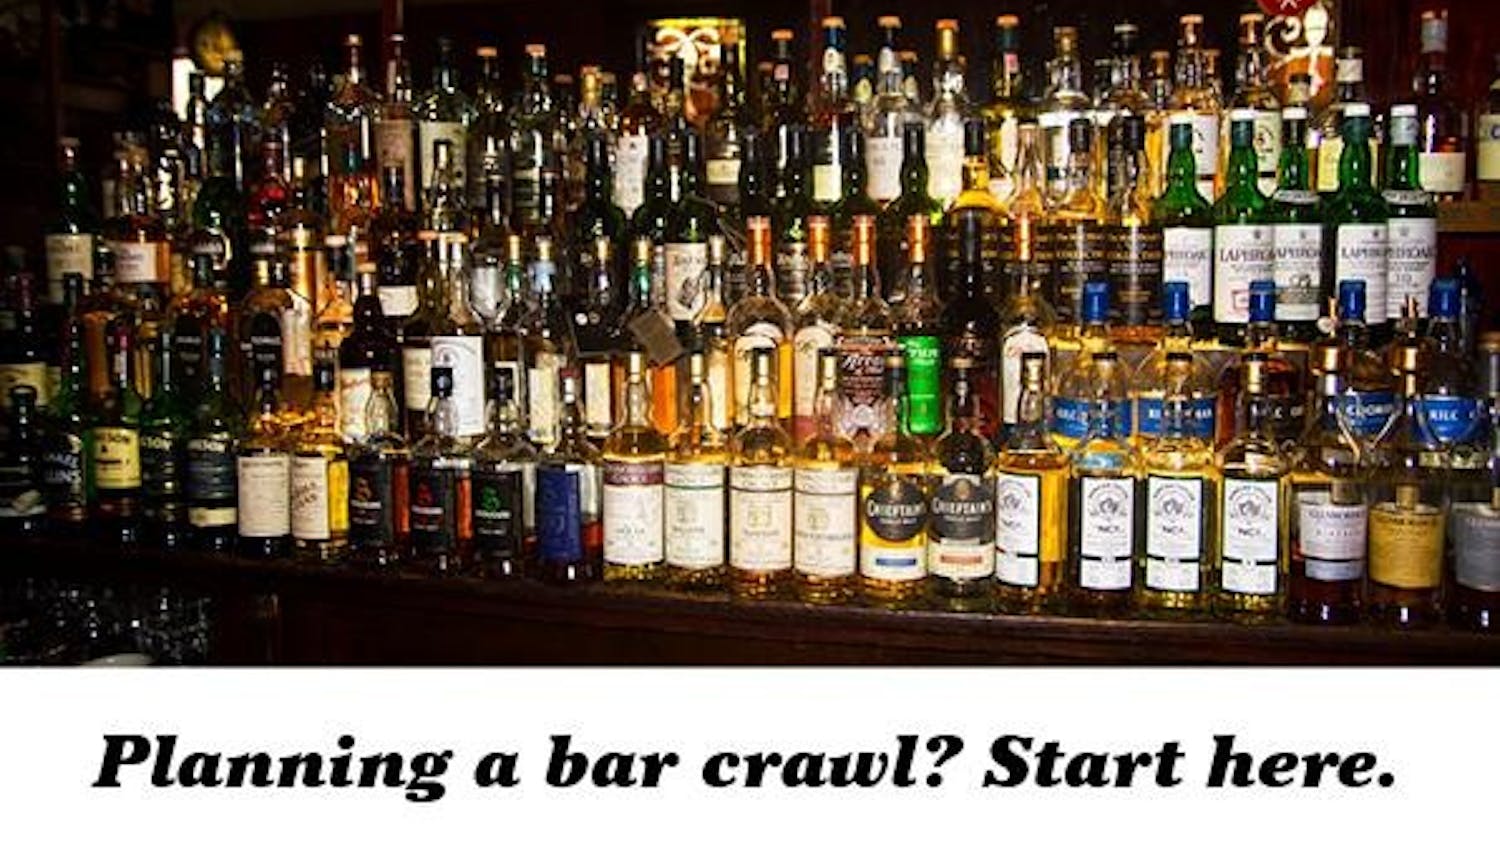 Planning a bar crawl?